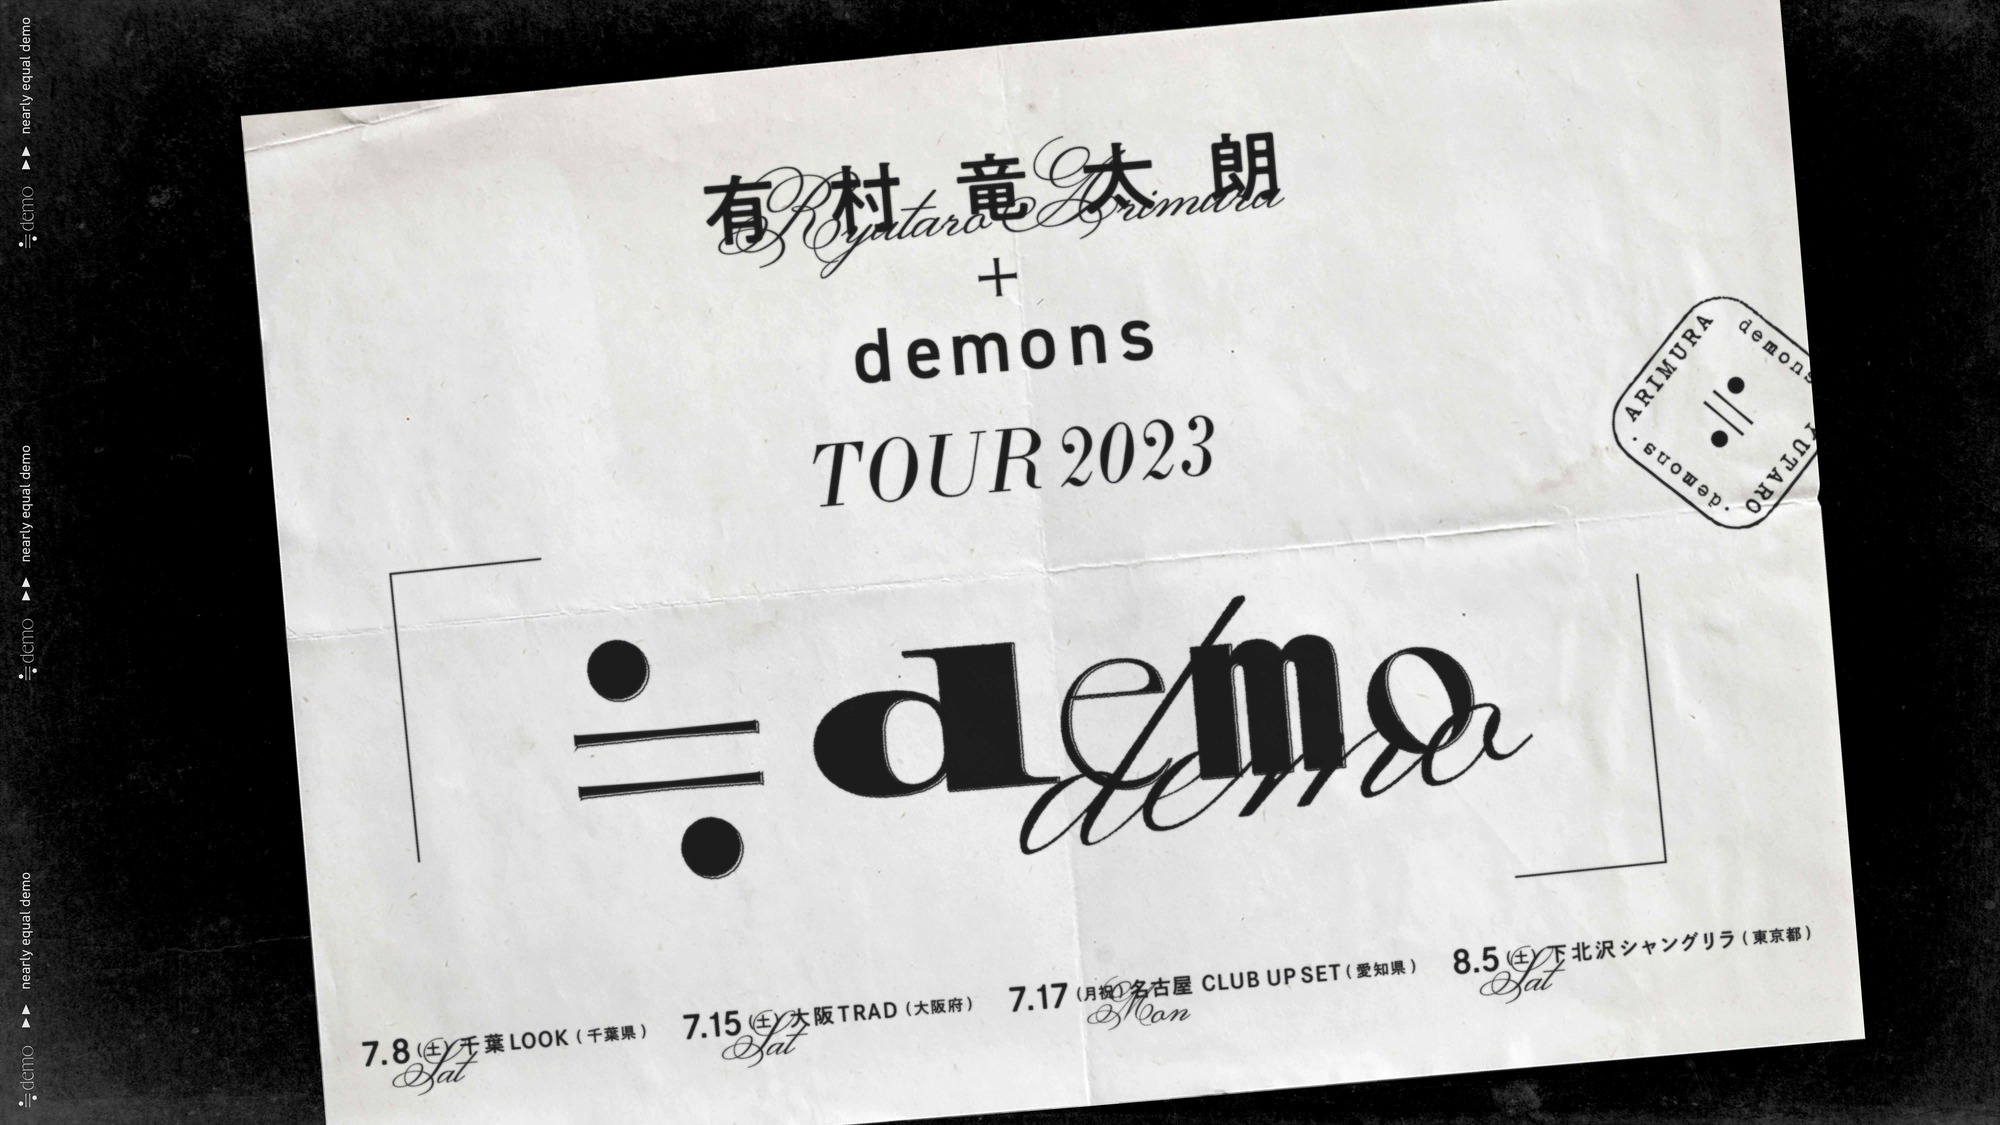 ライブ情報】有村竜太朗 + demons TOUR2023「≒demo」開催決定 | 有村 